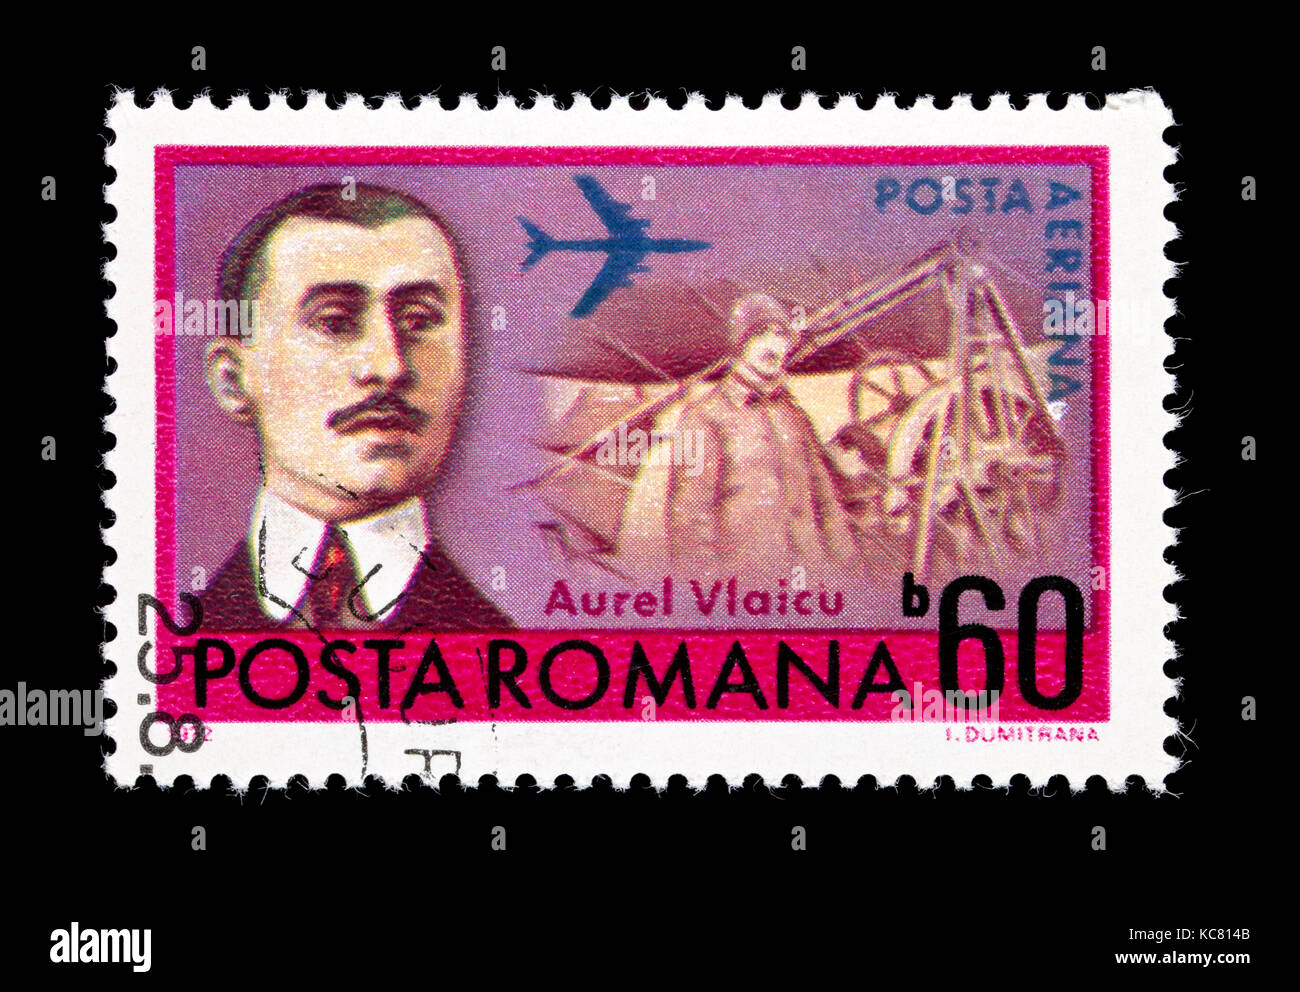 Timbre-poste de représentant de la Roumanie Oradea et monoplane, pionnier de l'aviation roumaine. Banque D'Images